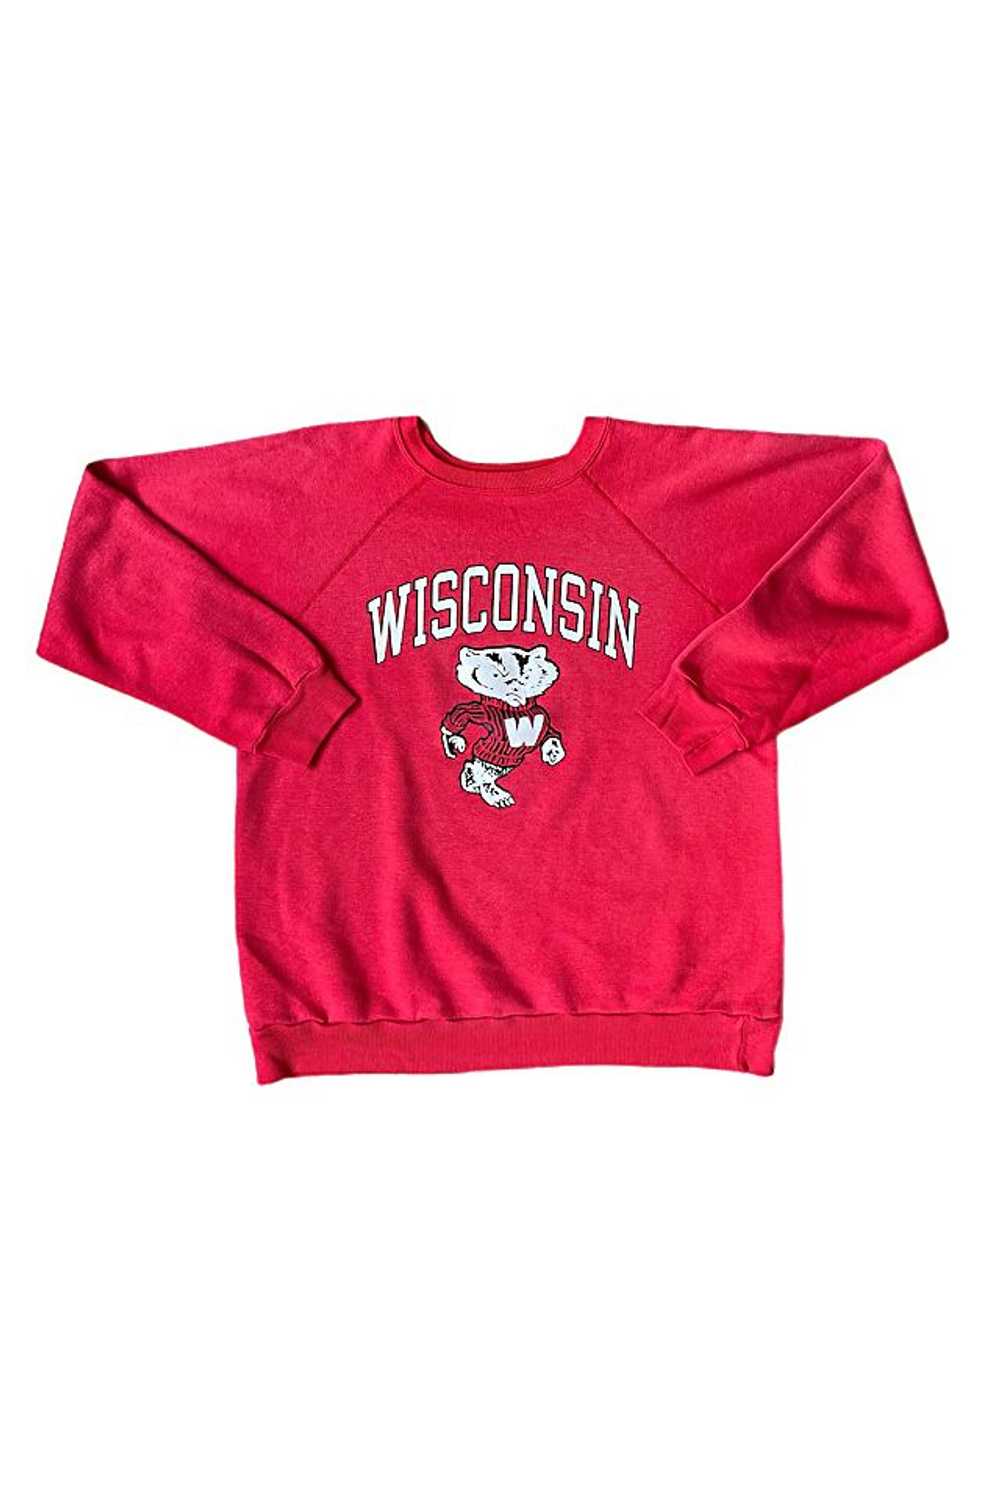 1980's Wisconsin Badgers Super Soft Sweatshirt Se… - image 1